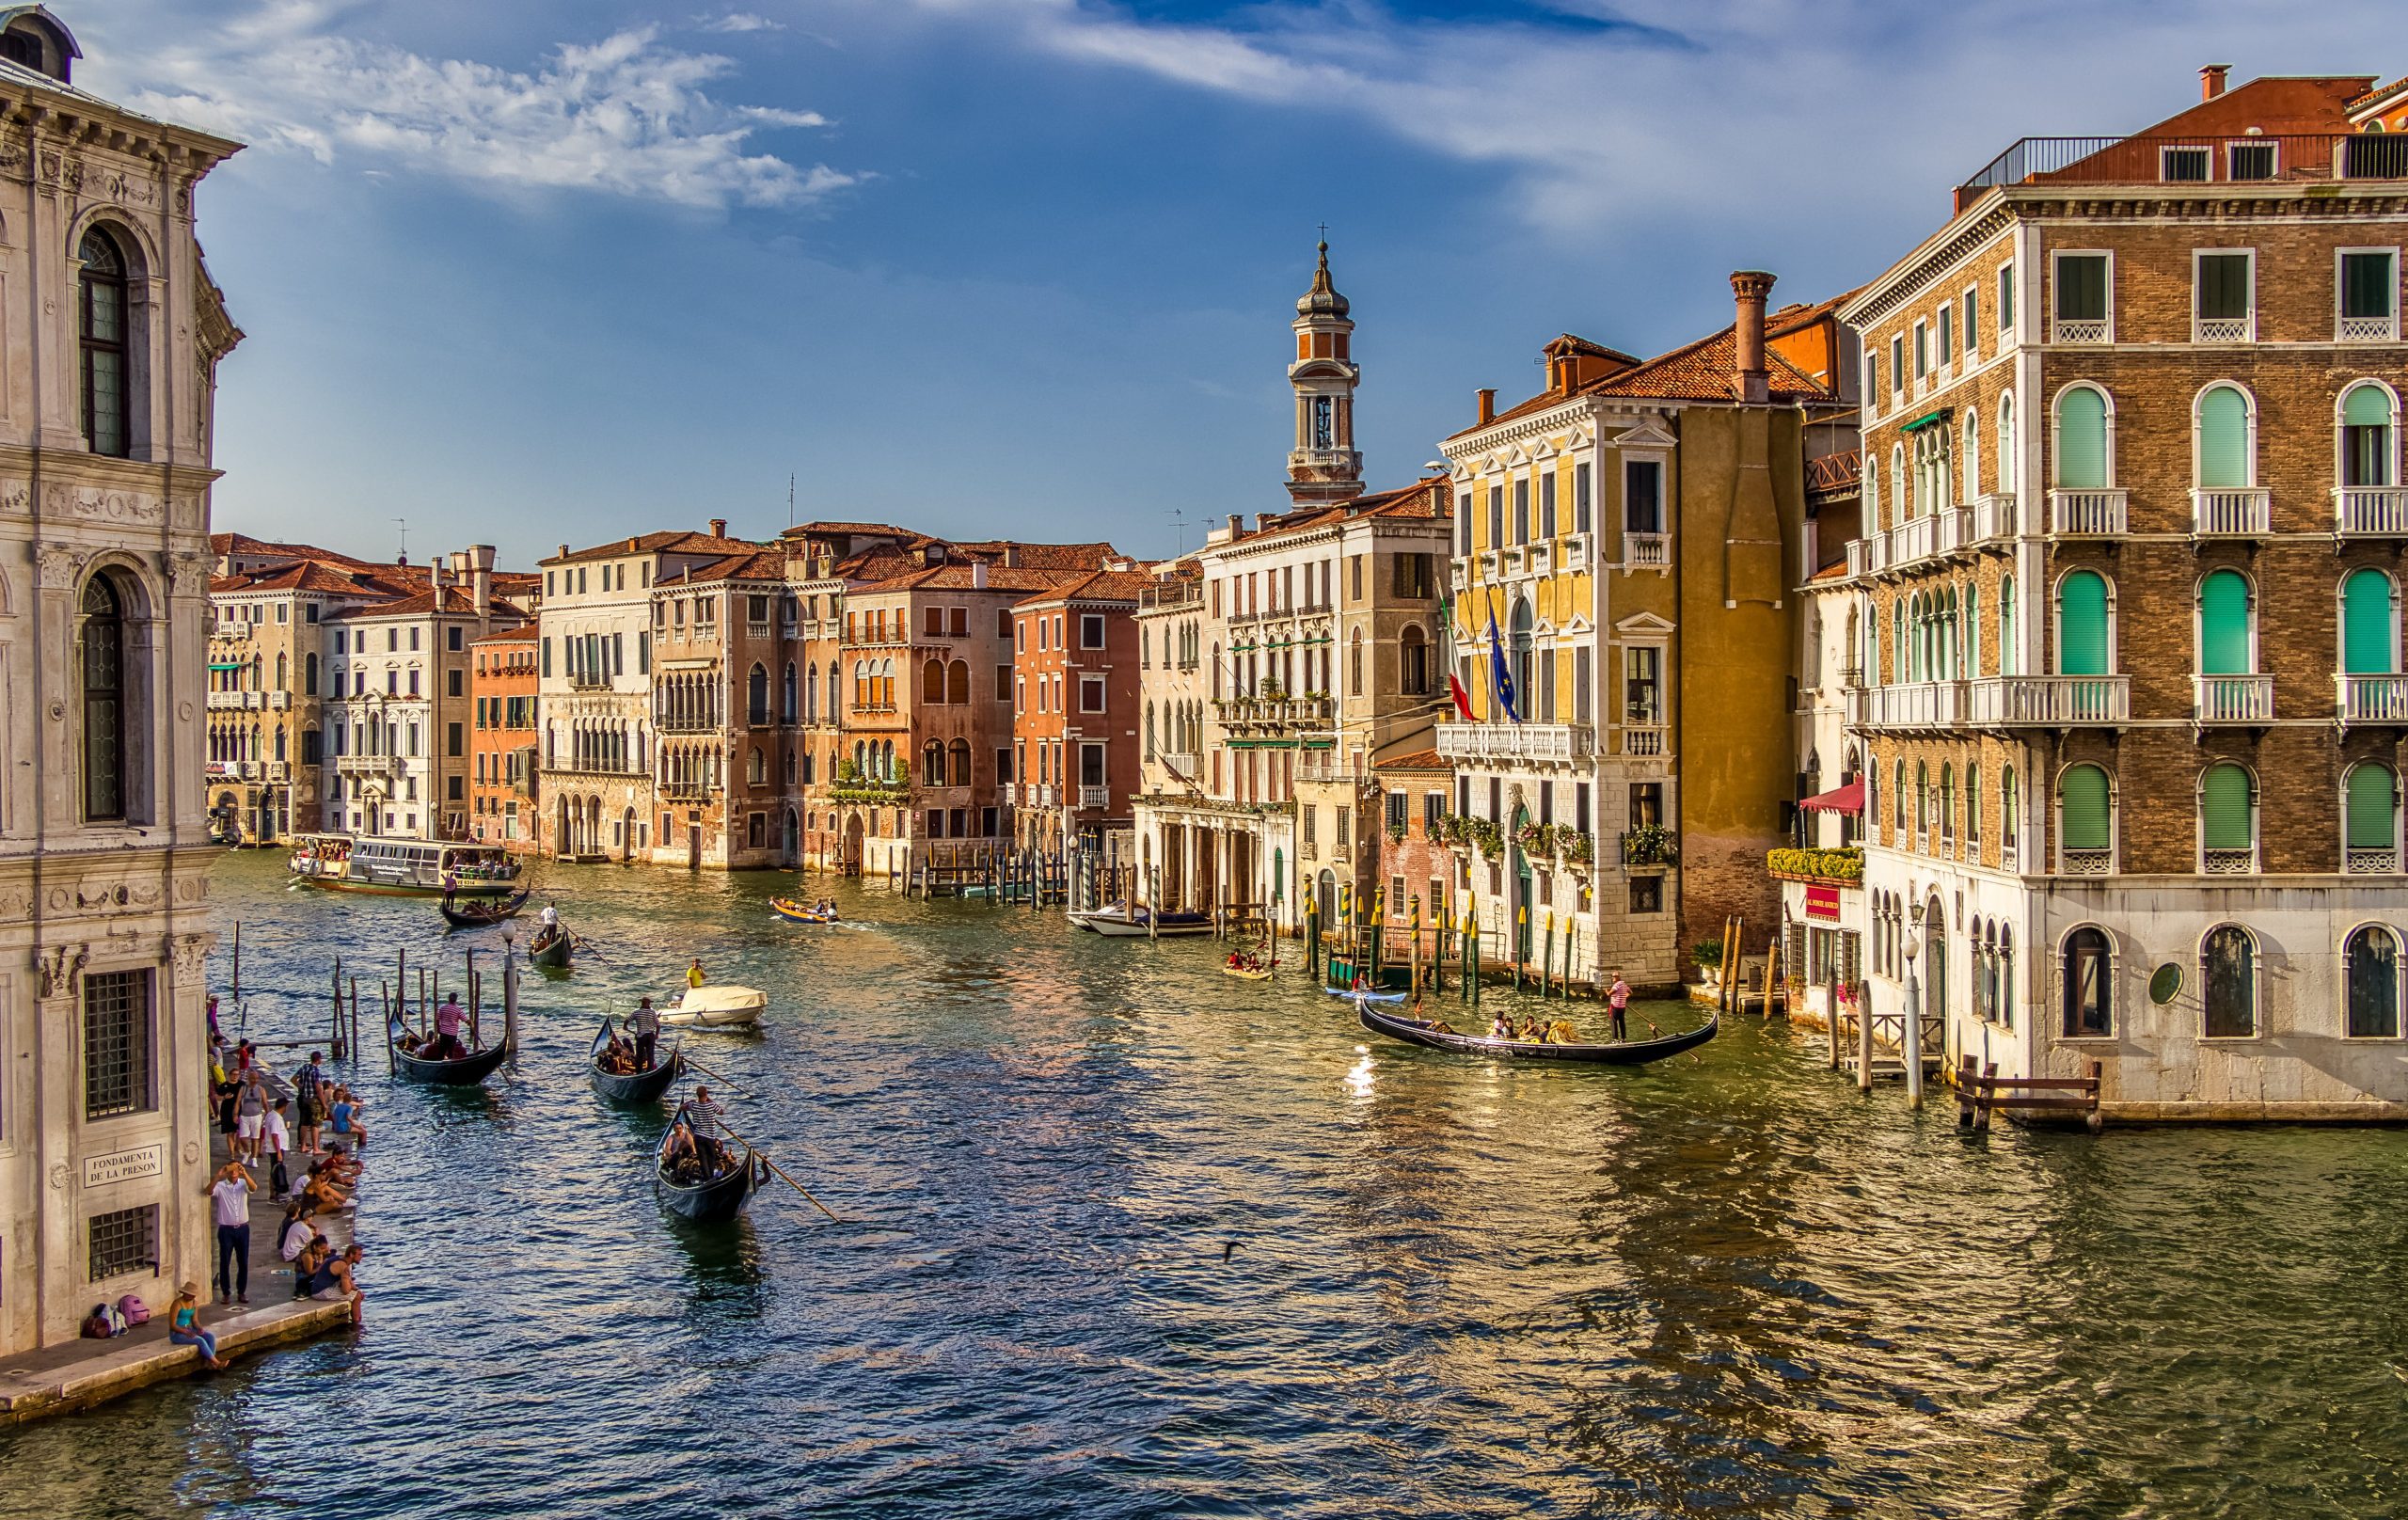 Taking a gondola ride in Venice